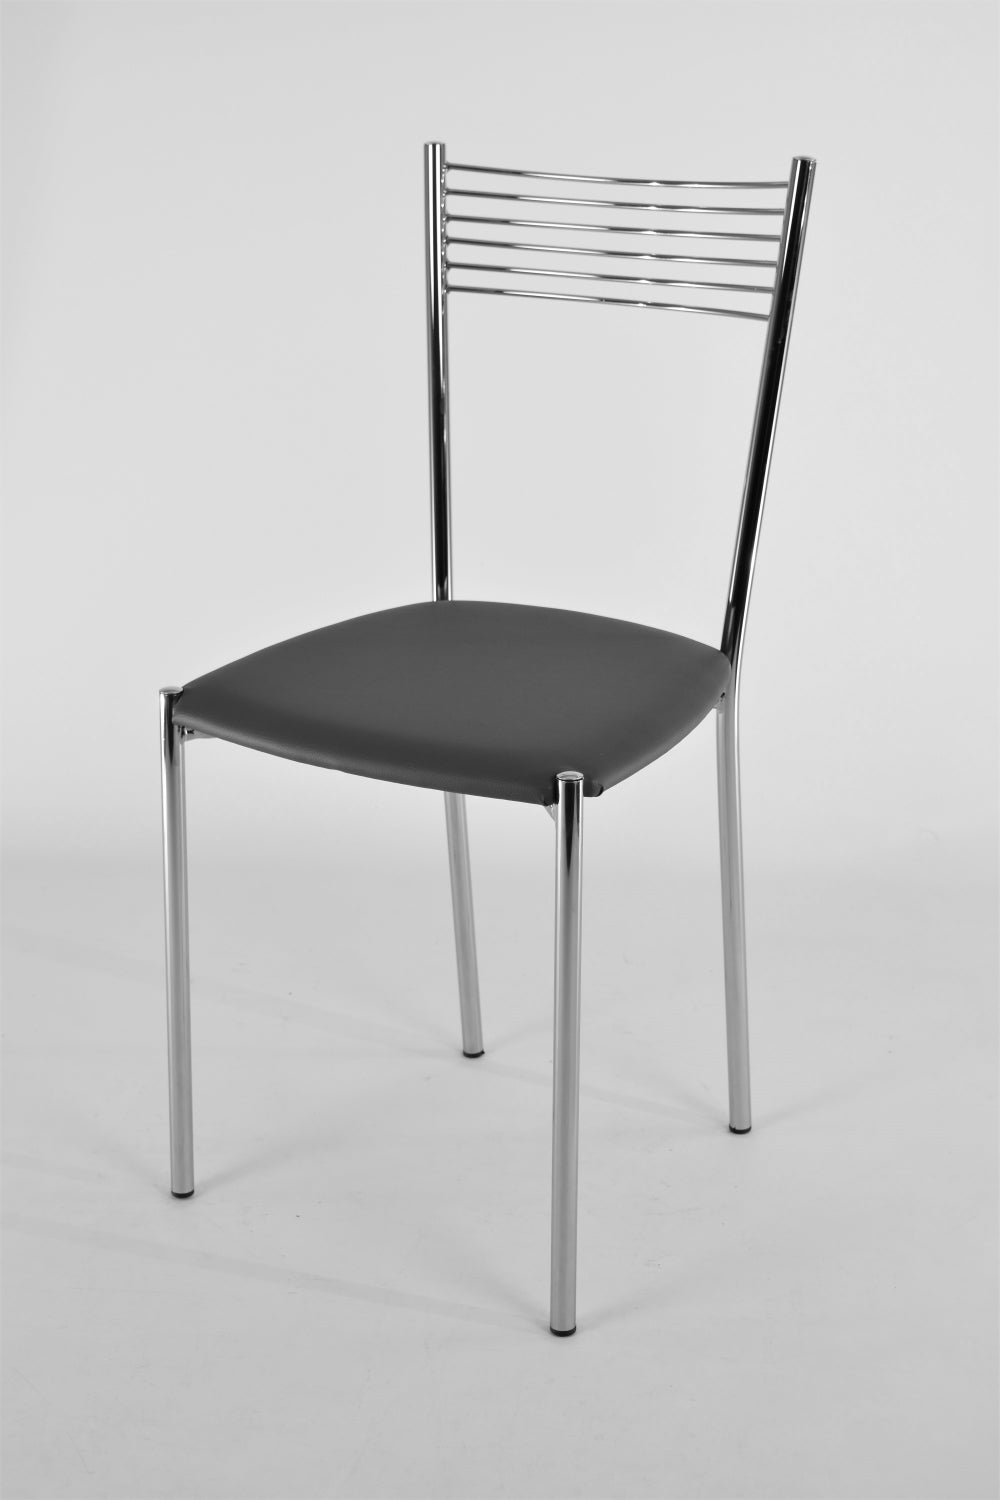 Tommychairs - Set 4 sillas de Cocina, Comedor, Bar y Restaurante Elegance, estructura en acero cromado y asiento tapizado en polipiel gris oscuro